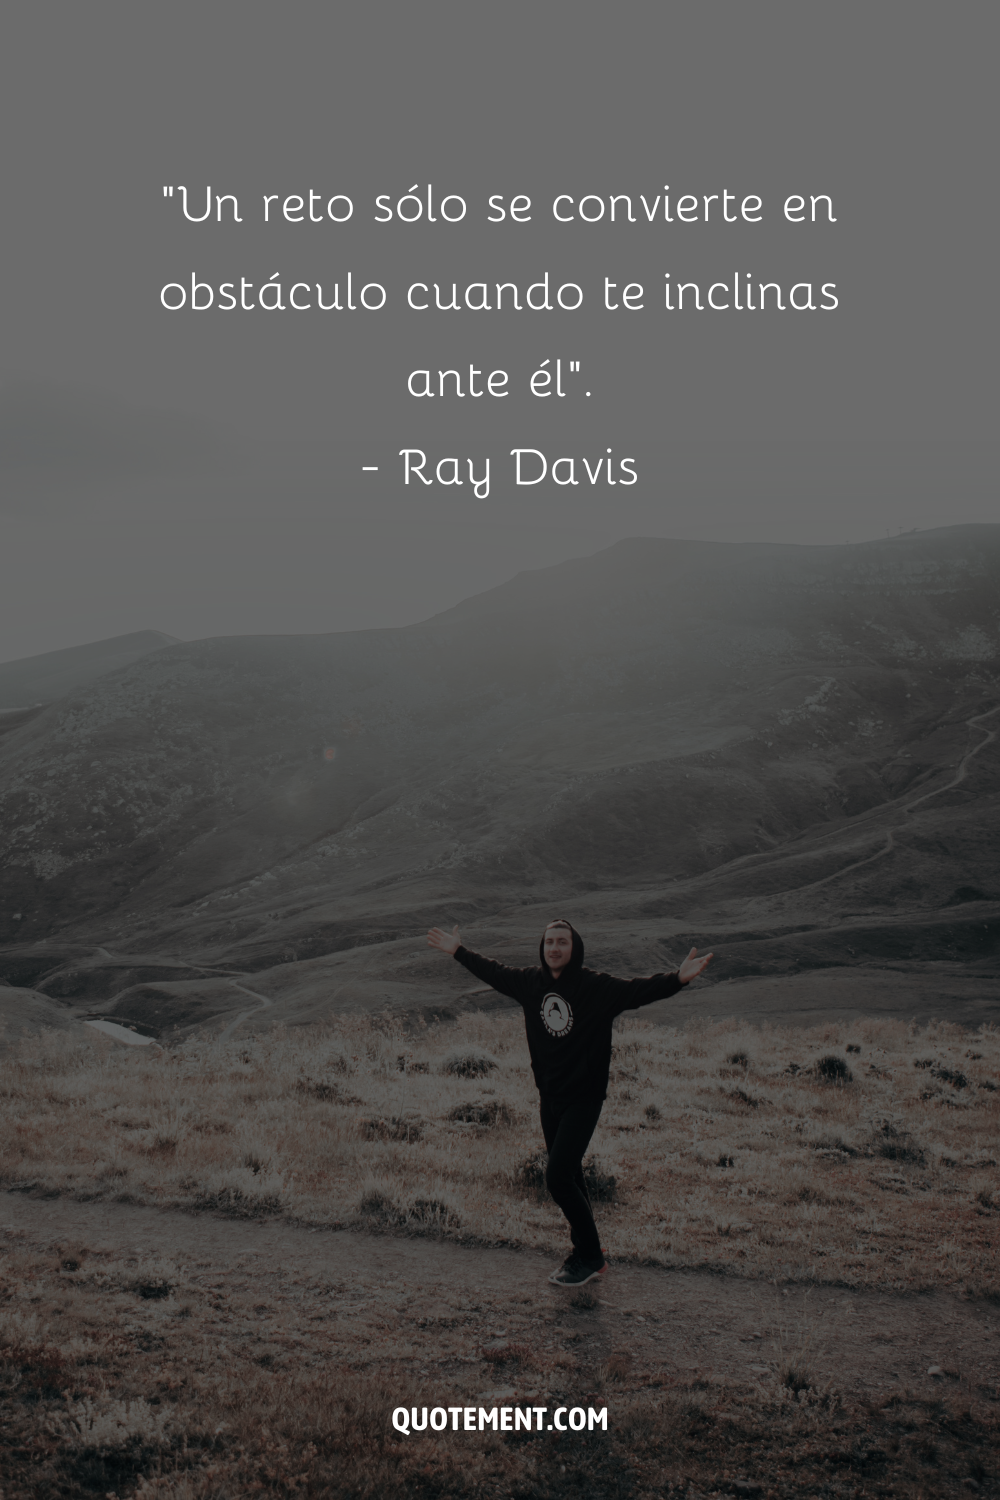 "Un reto sólo se convierte en obstáculo cuando te inclinas ante él". - Ray Davis